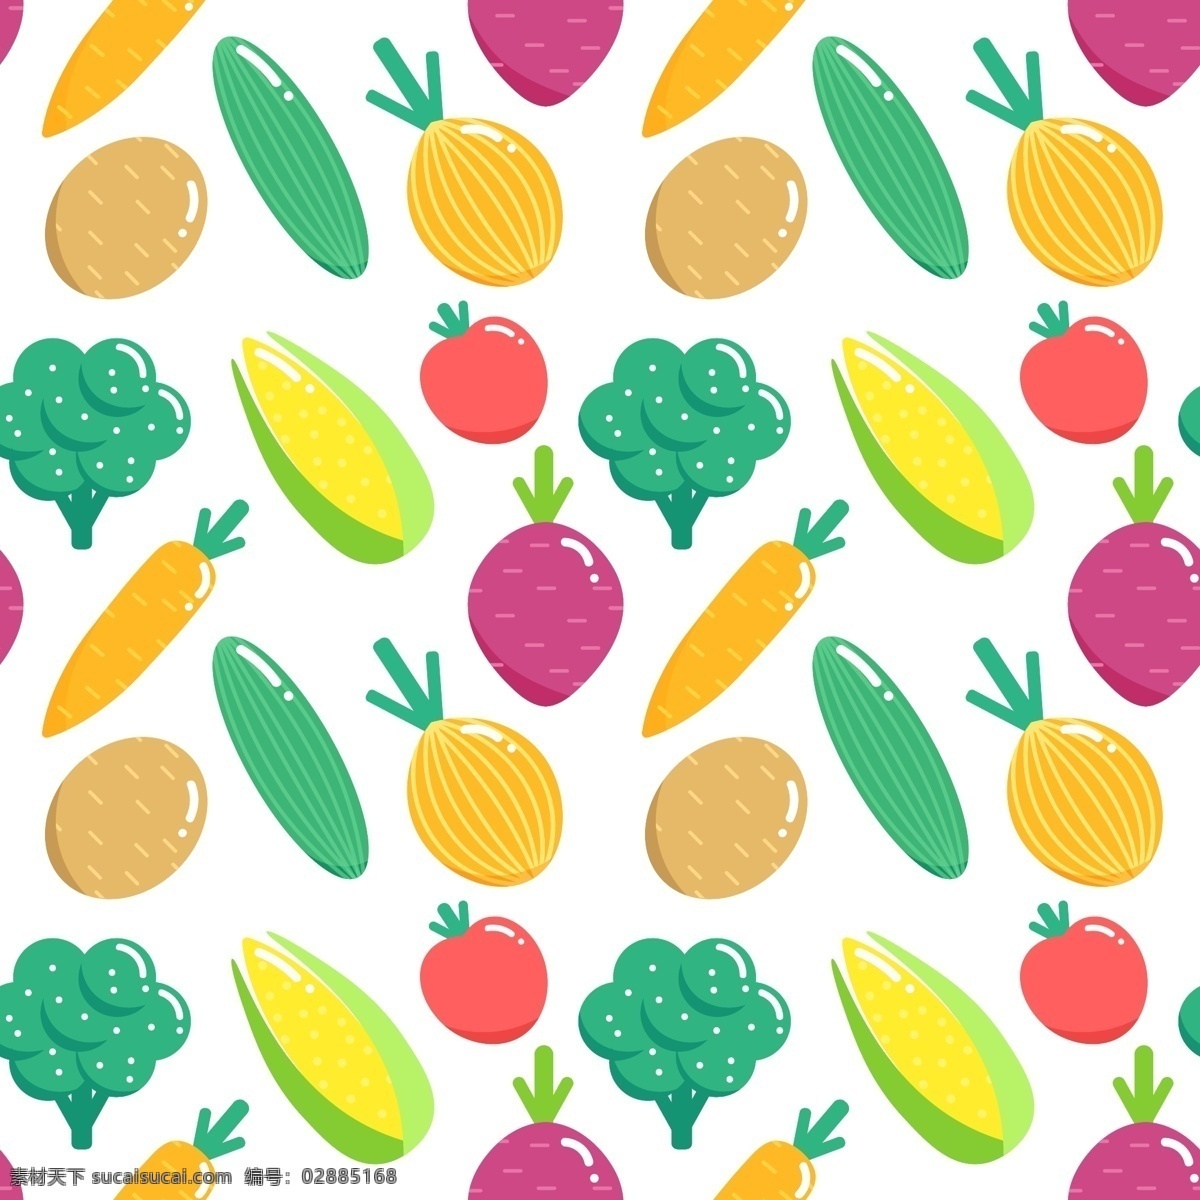 植物图案背景 背景 图案 食物 夏天 水果 墙纸 热带 饮料 自然 健康 蔬菜 自然背景 饮食 模式背景 健康食品 营养